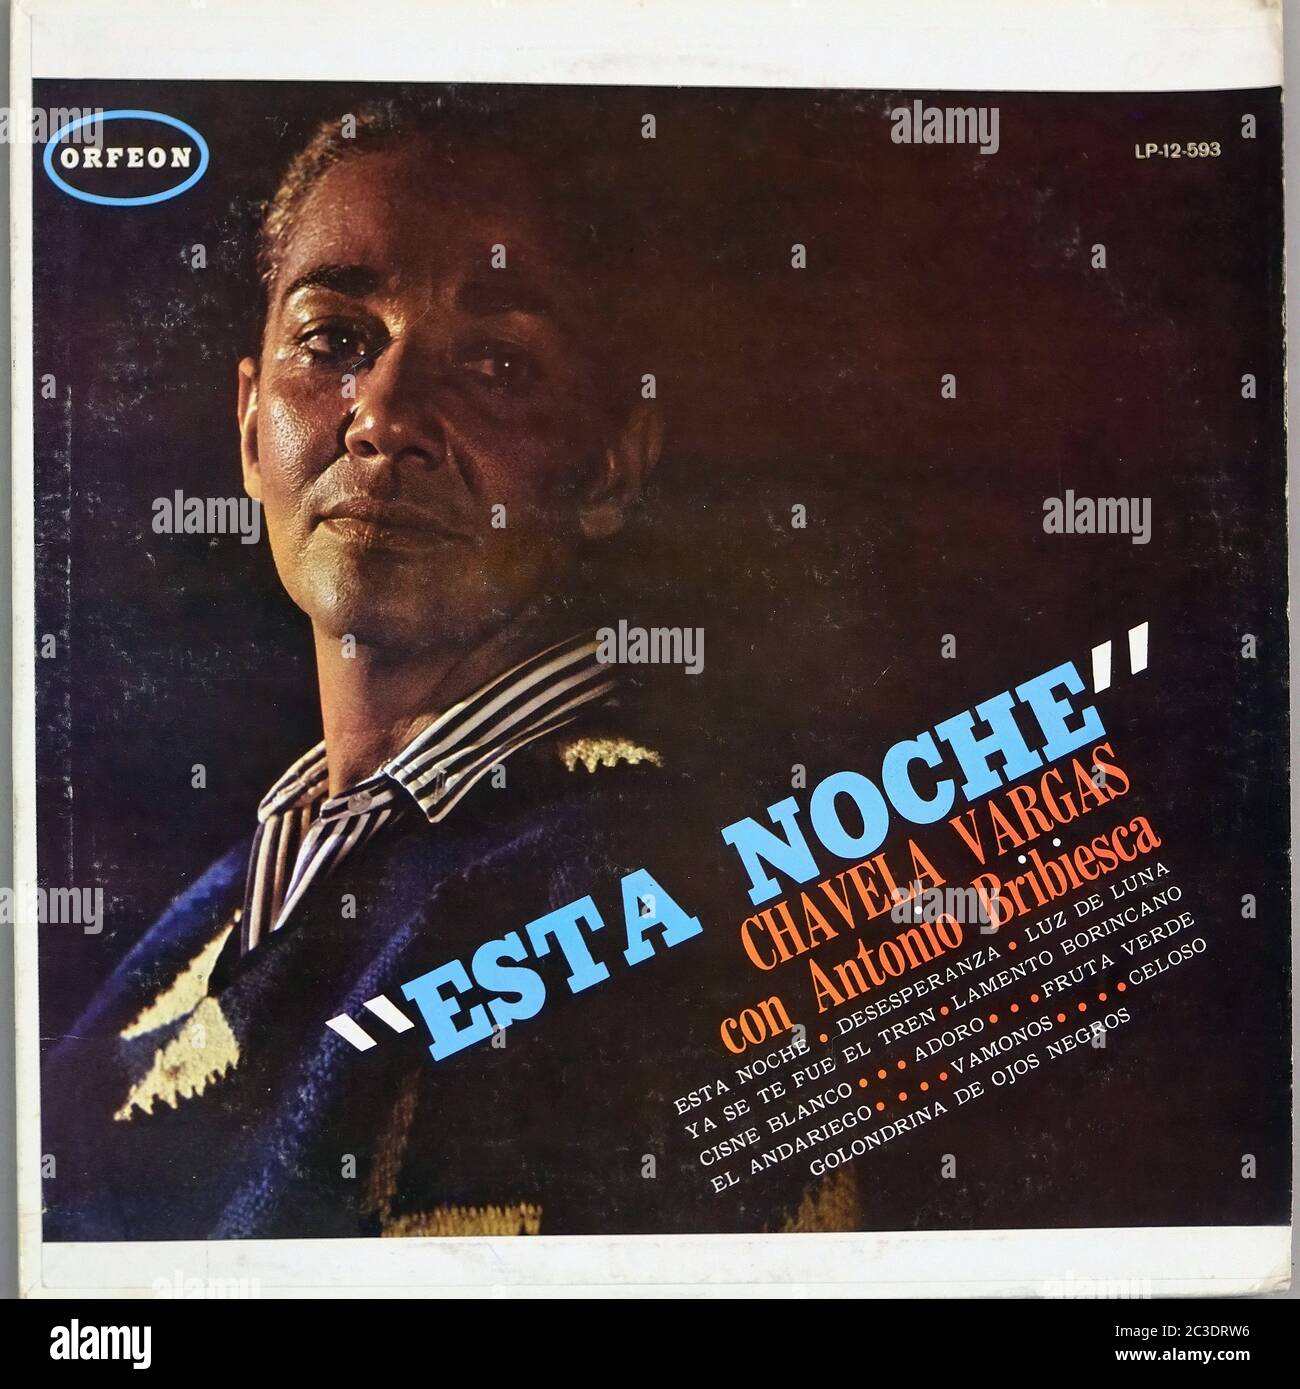 CHAVELA VARGAS CON ANTONIO BRIBIESCA ESTA NOCHE MEXICO ORFEON  - Vintage 12'' LP vinyl Cover Stock Photo